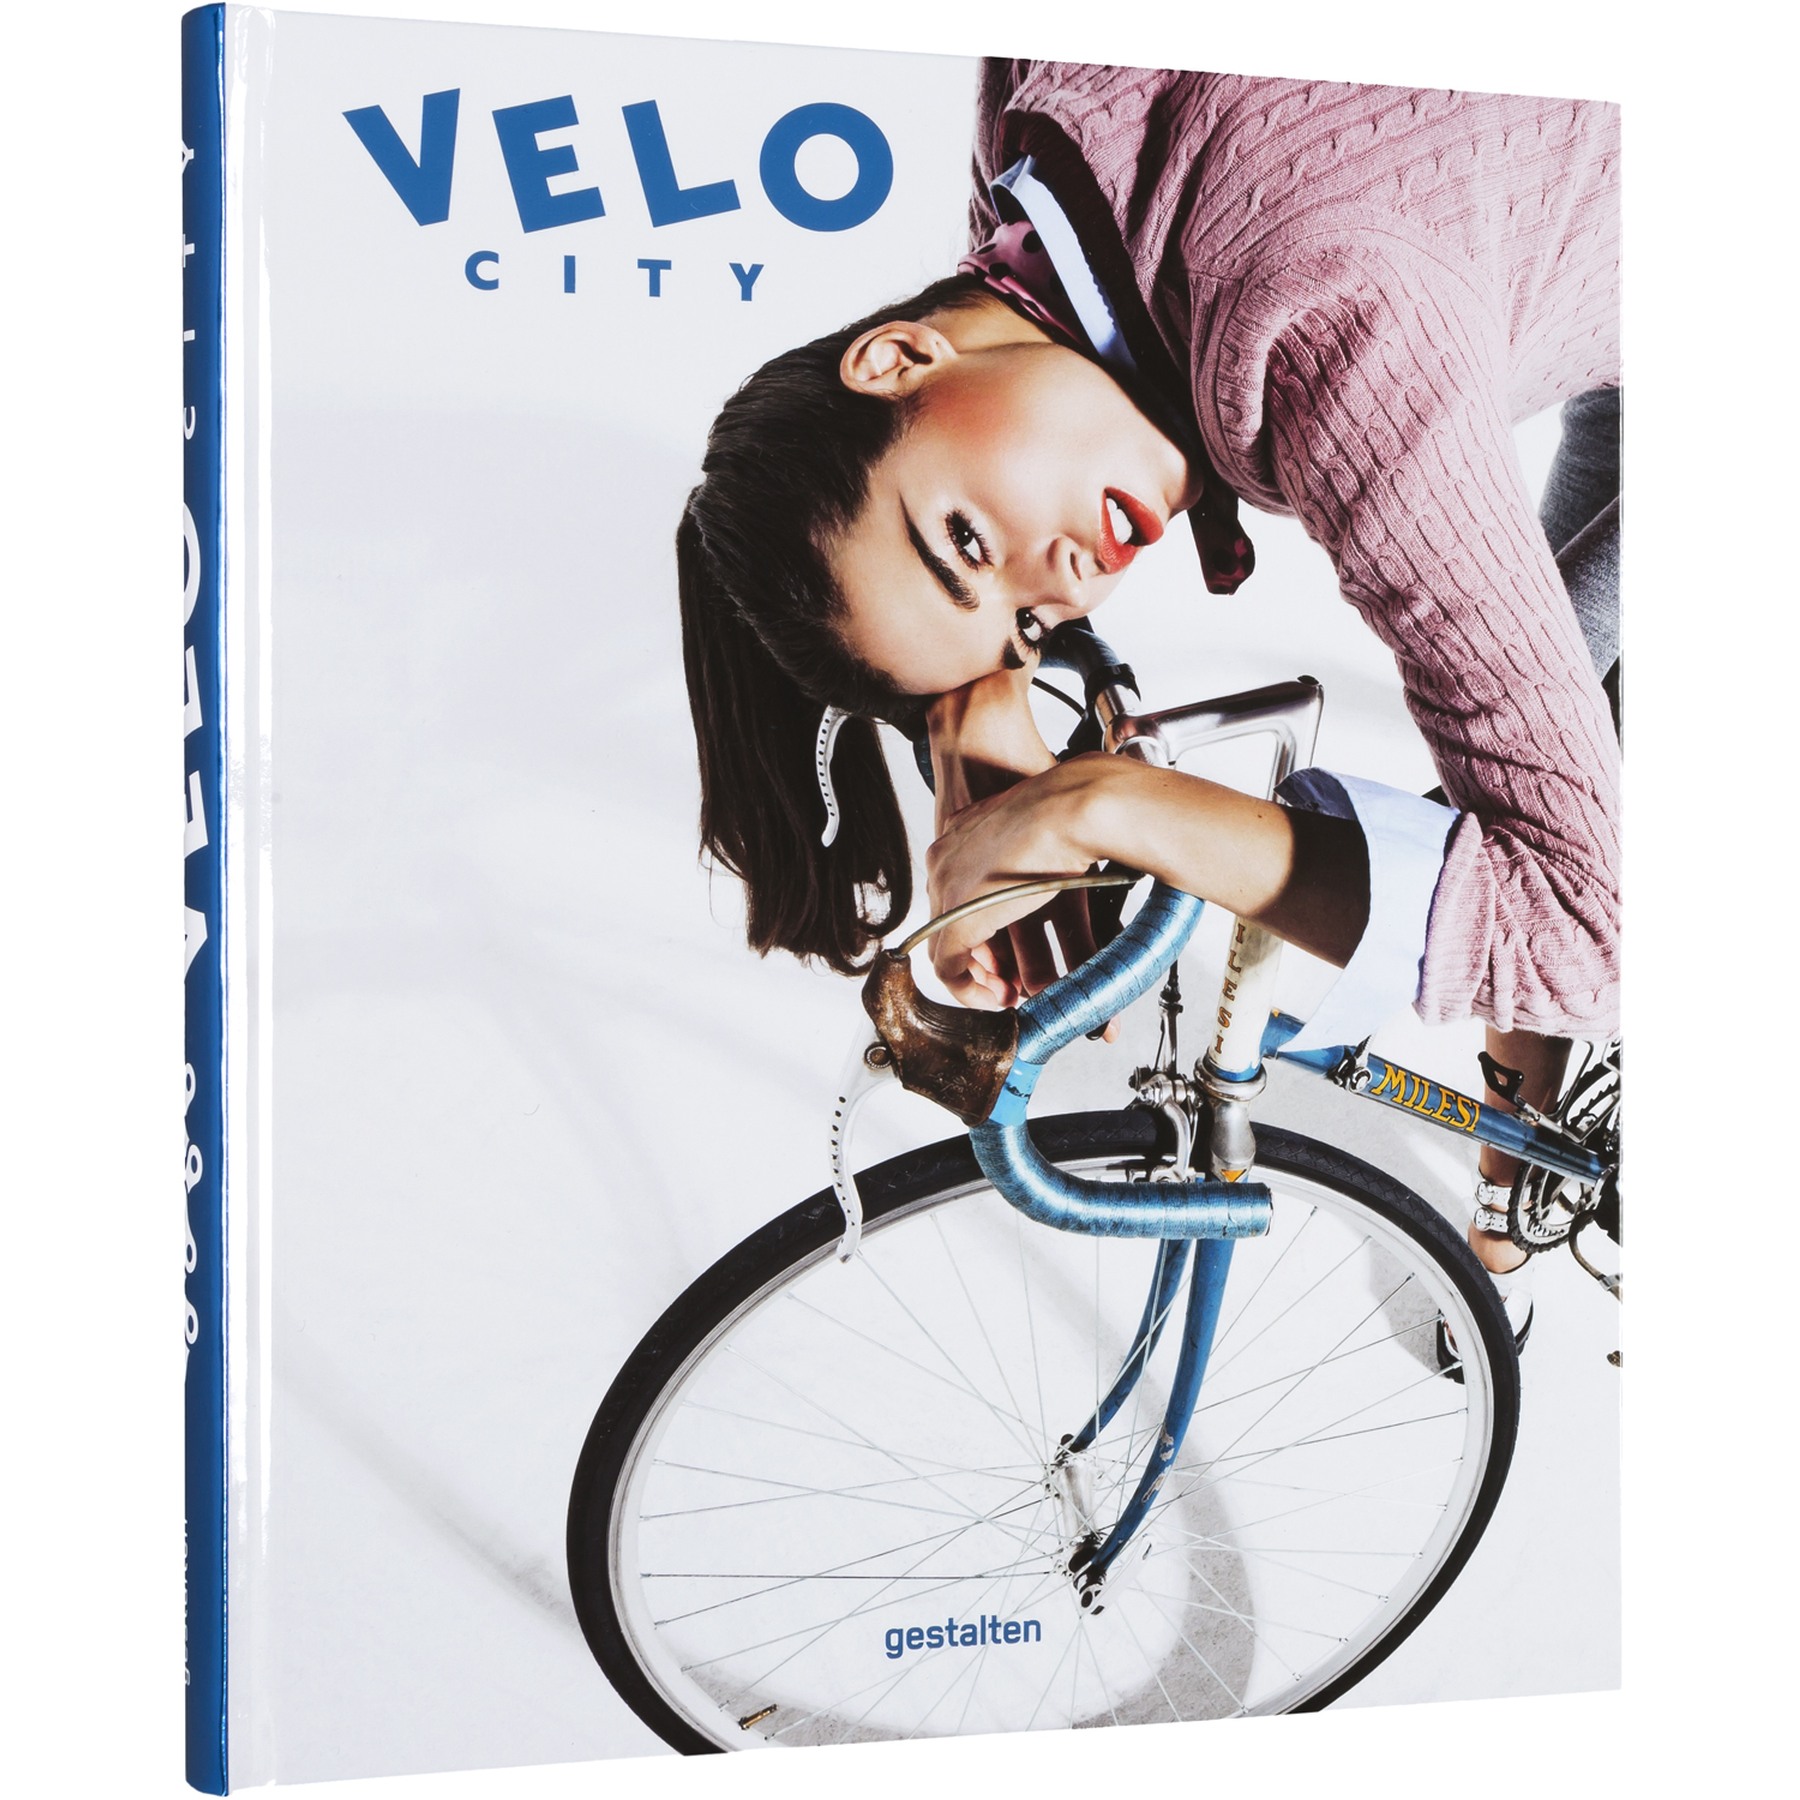 Produktbild von gestalten VELO City - Englisch - Bicycle Culture and City Life